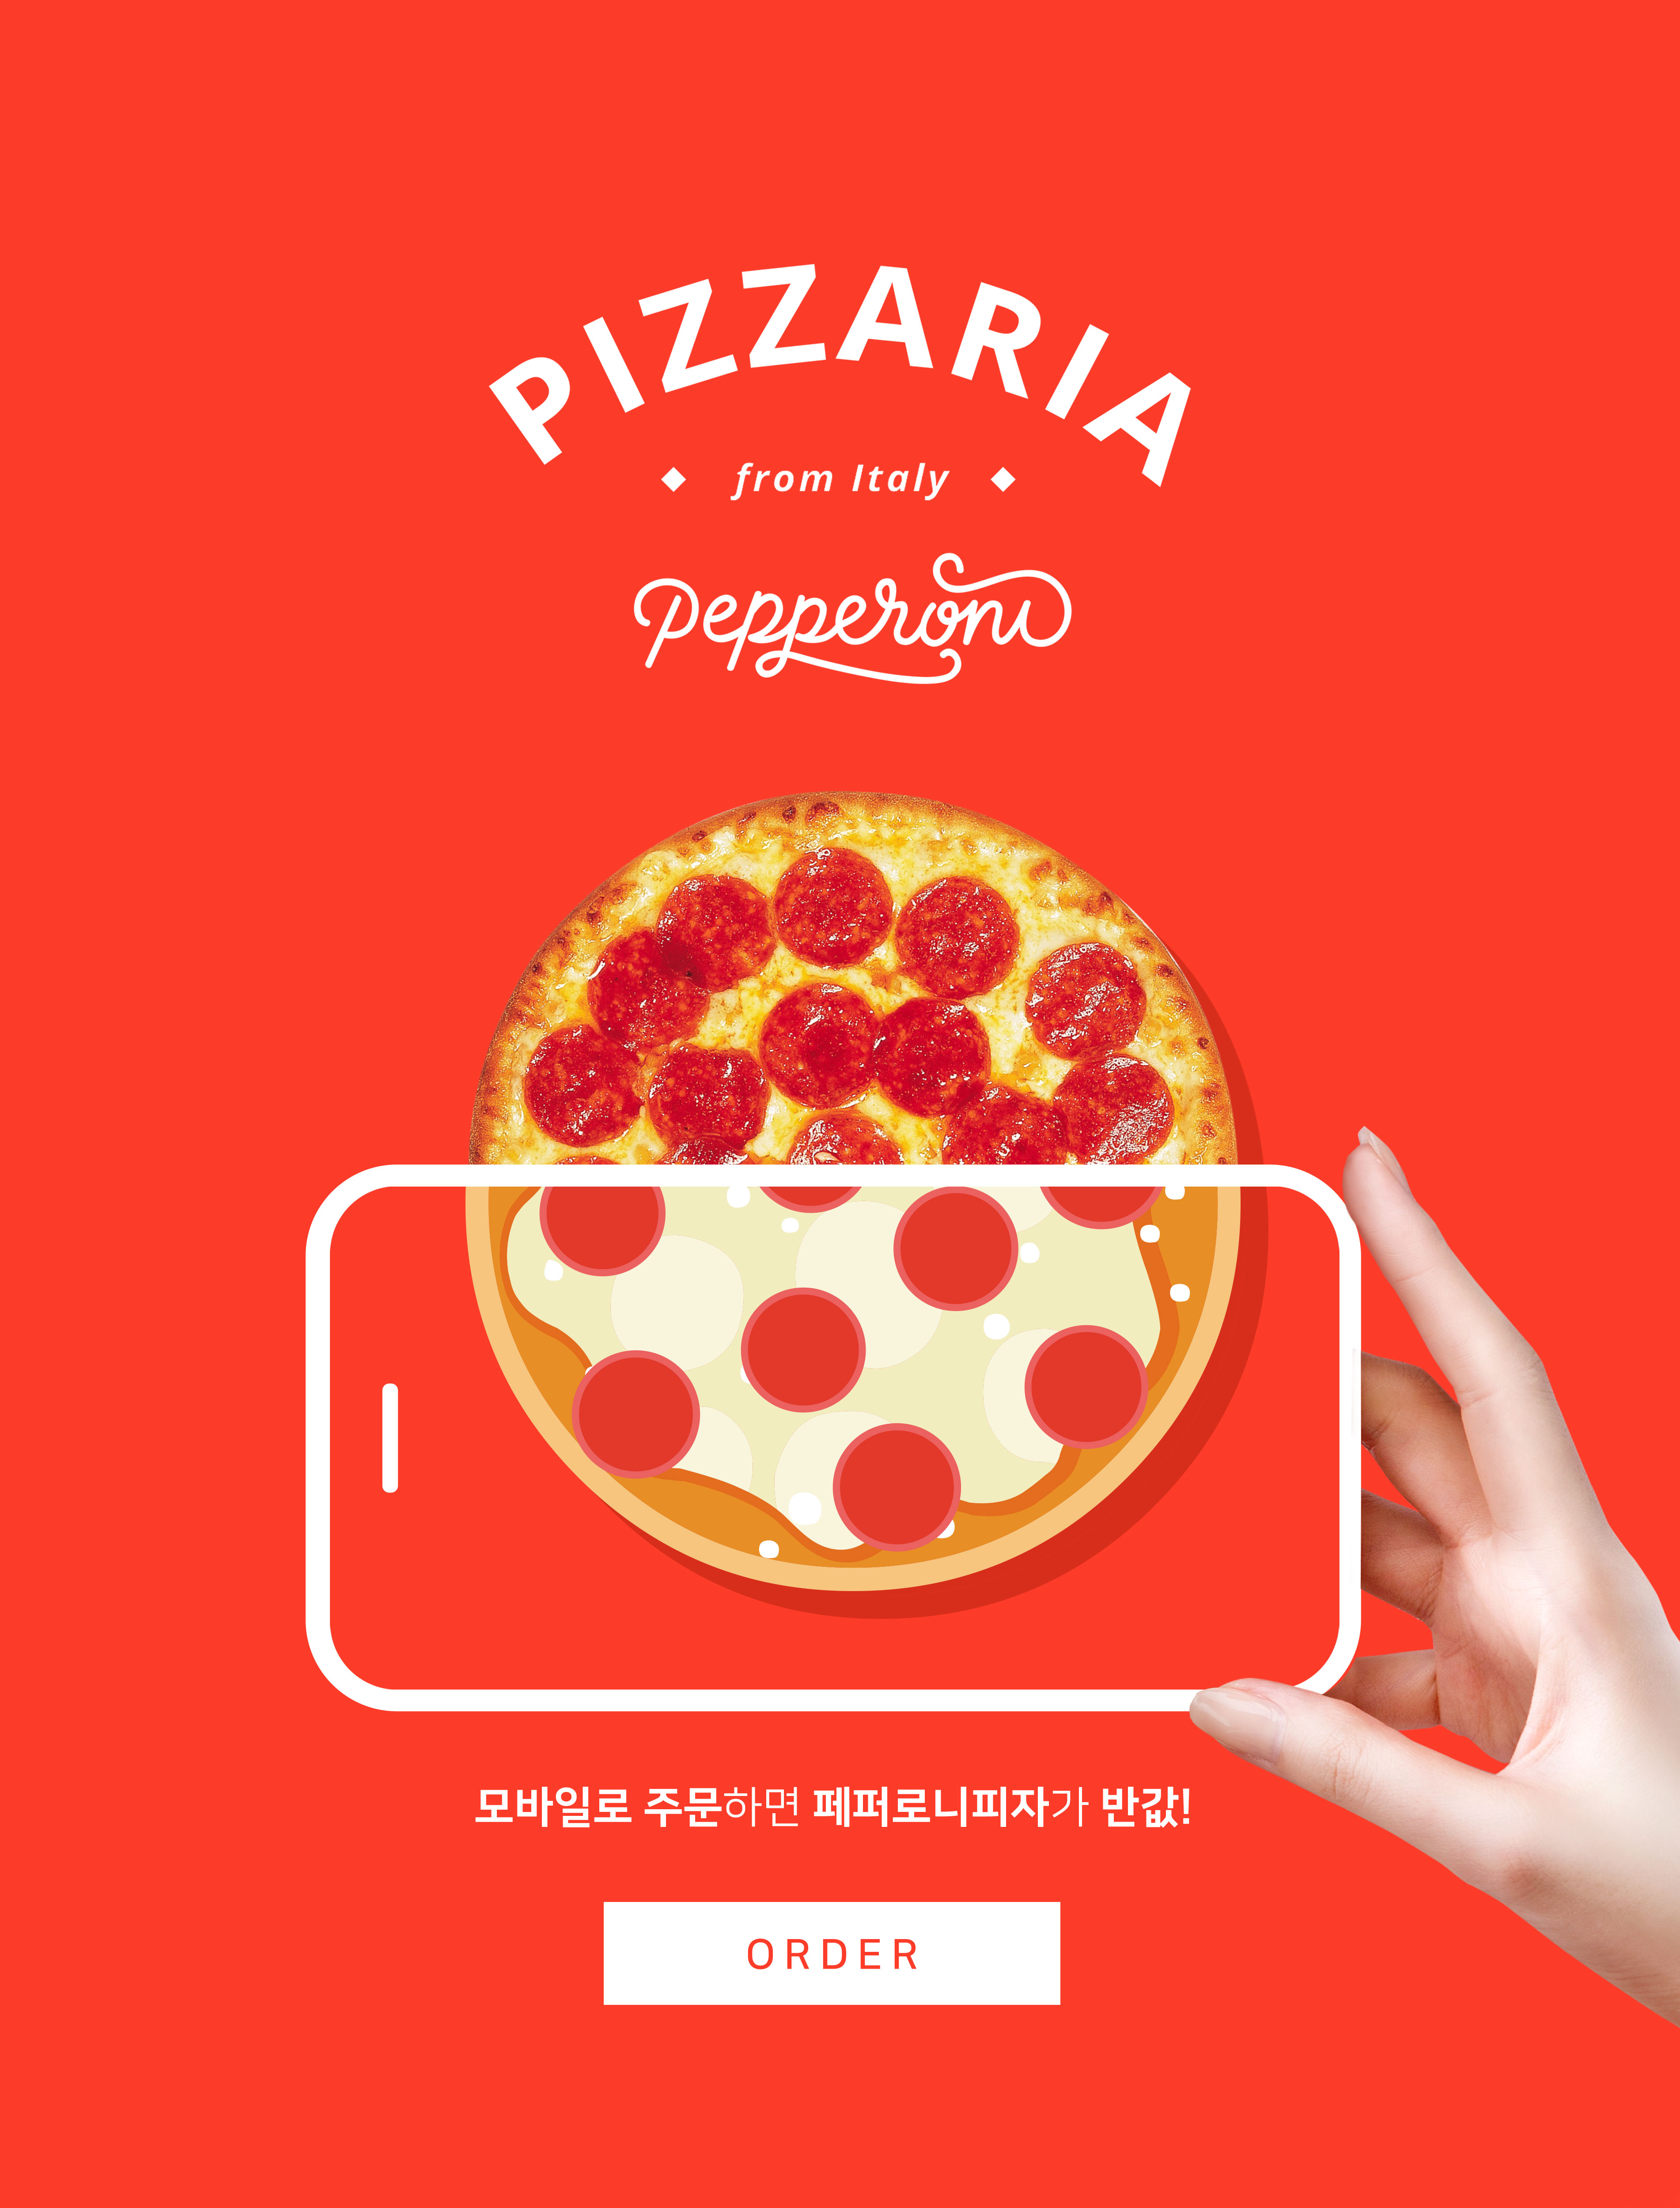 手机订购披萨半价活动宣传海报PSD素材素材库精选素材插图